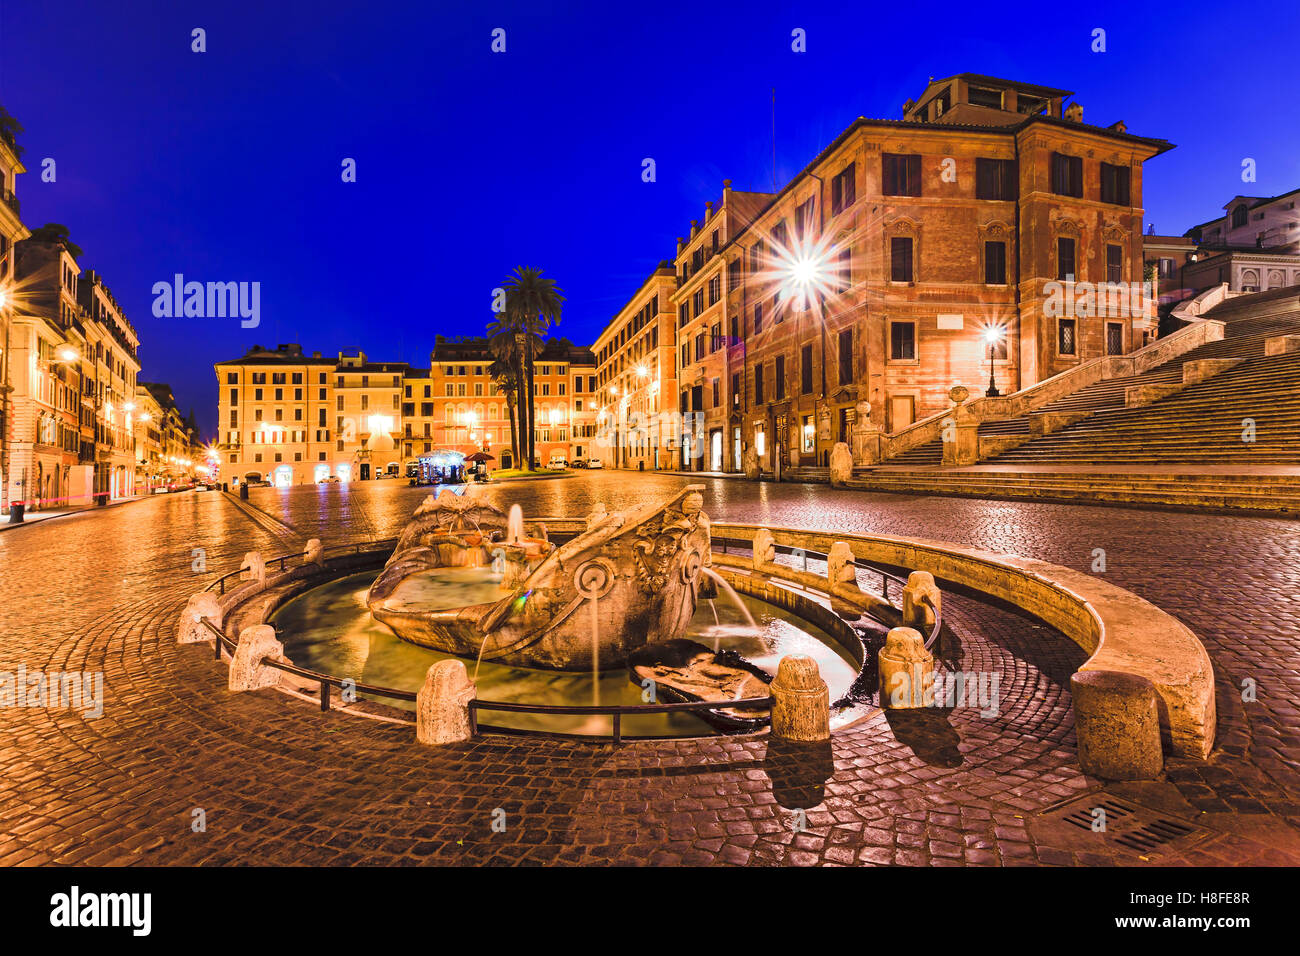 Piazza di Spagna e a forma di nave fontana di Roma, Italia, presso sunrise.architettura storica di antichi palazzi e case. Foto Stock